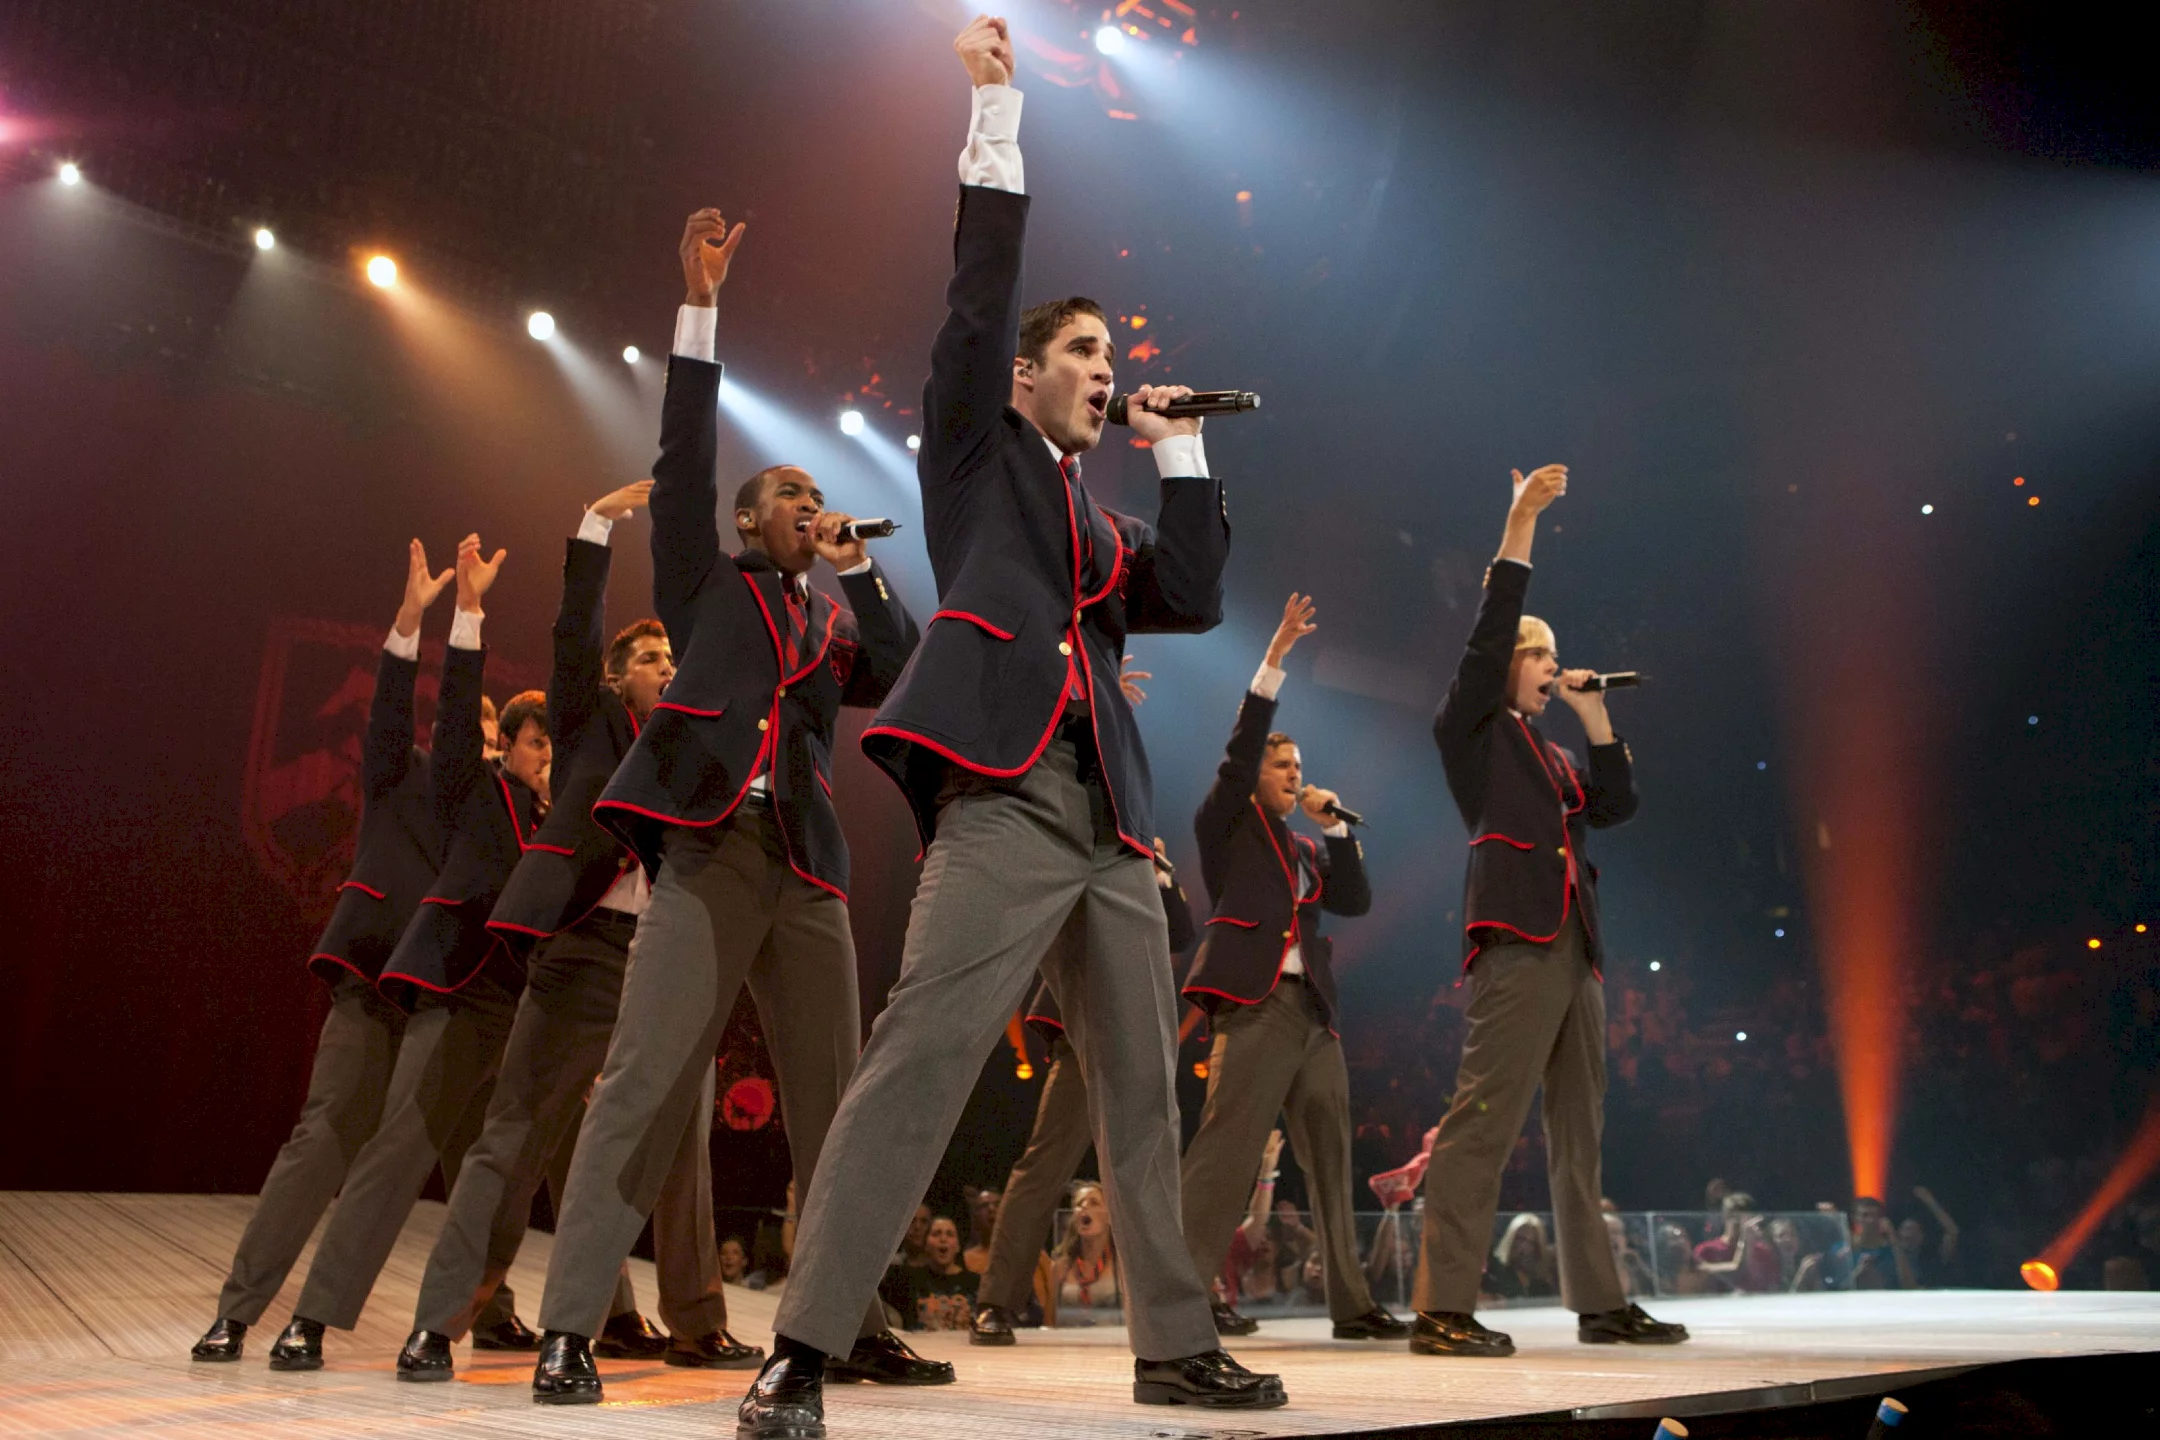 Photo du film : Glee ! on tour - Le film 3D